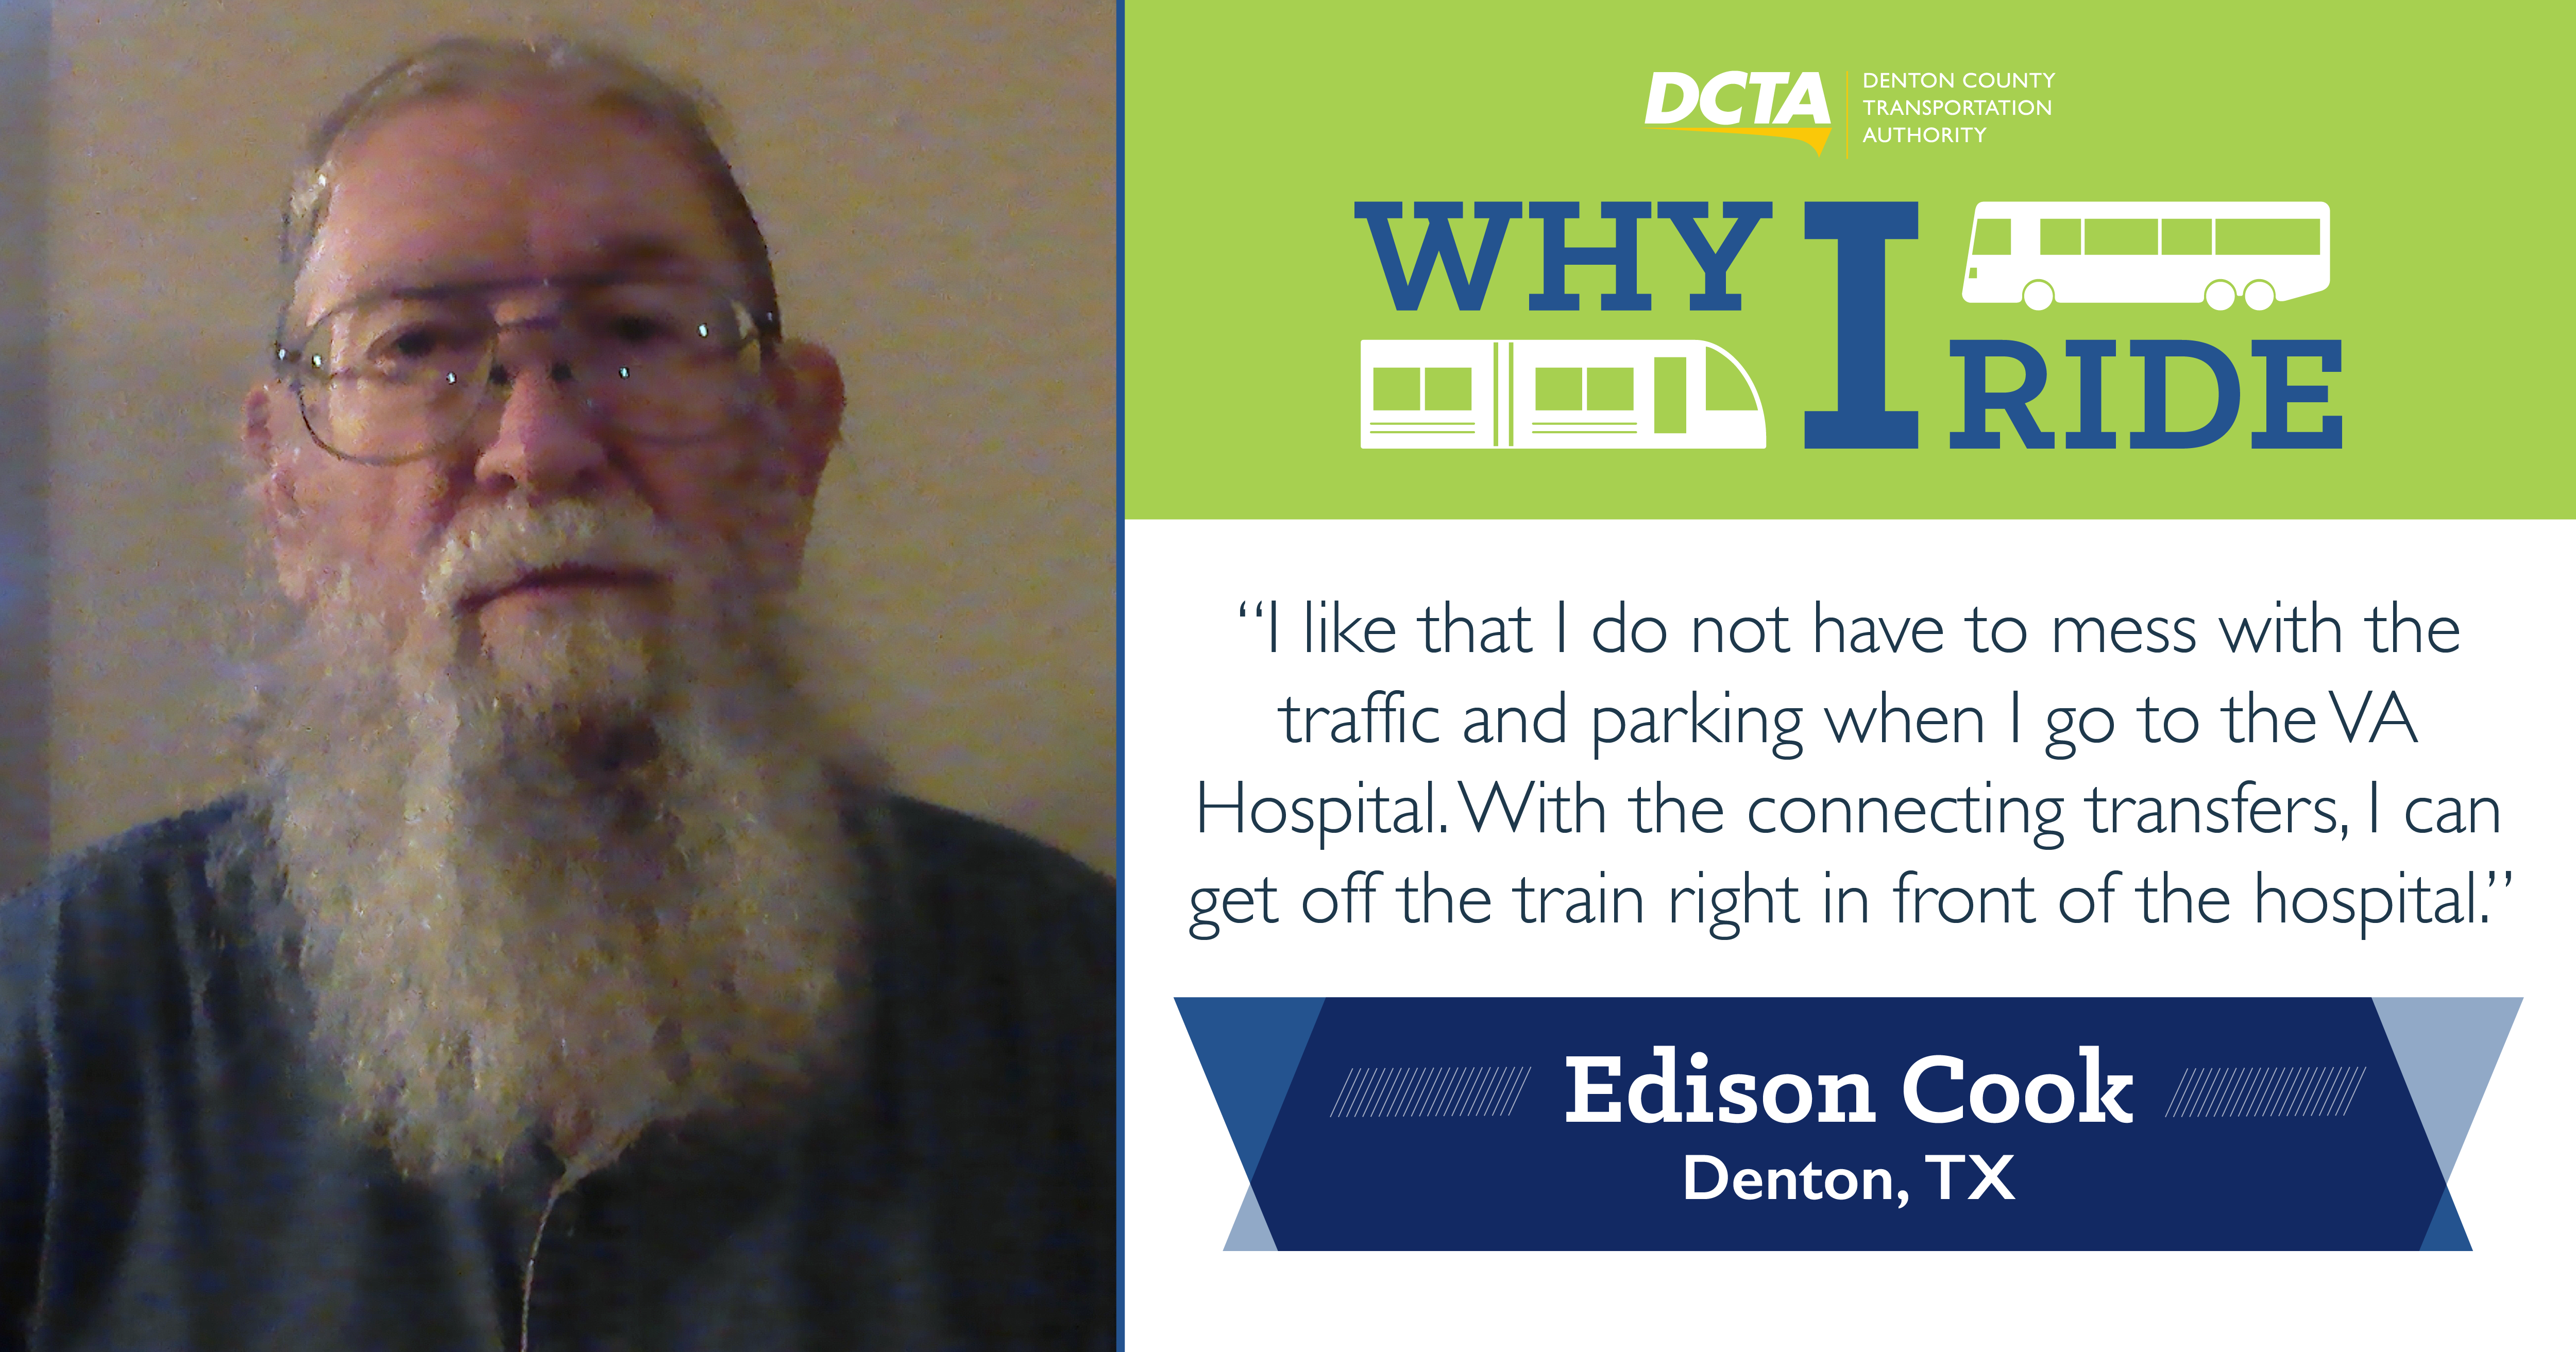 #WhyIRideDCTA: Edison Cook